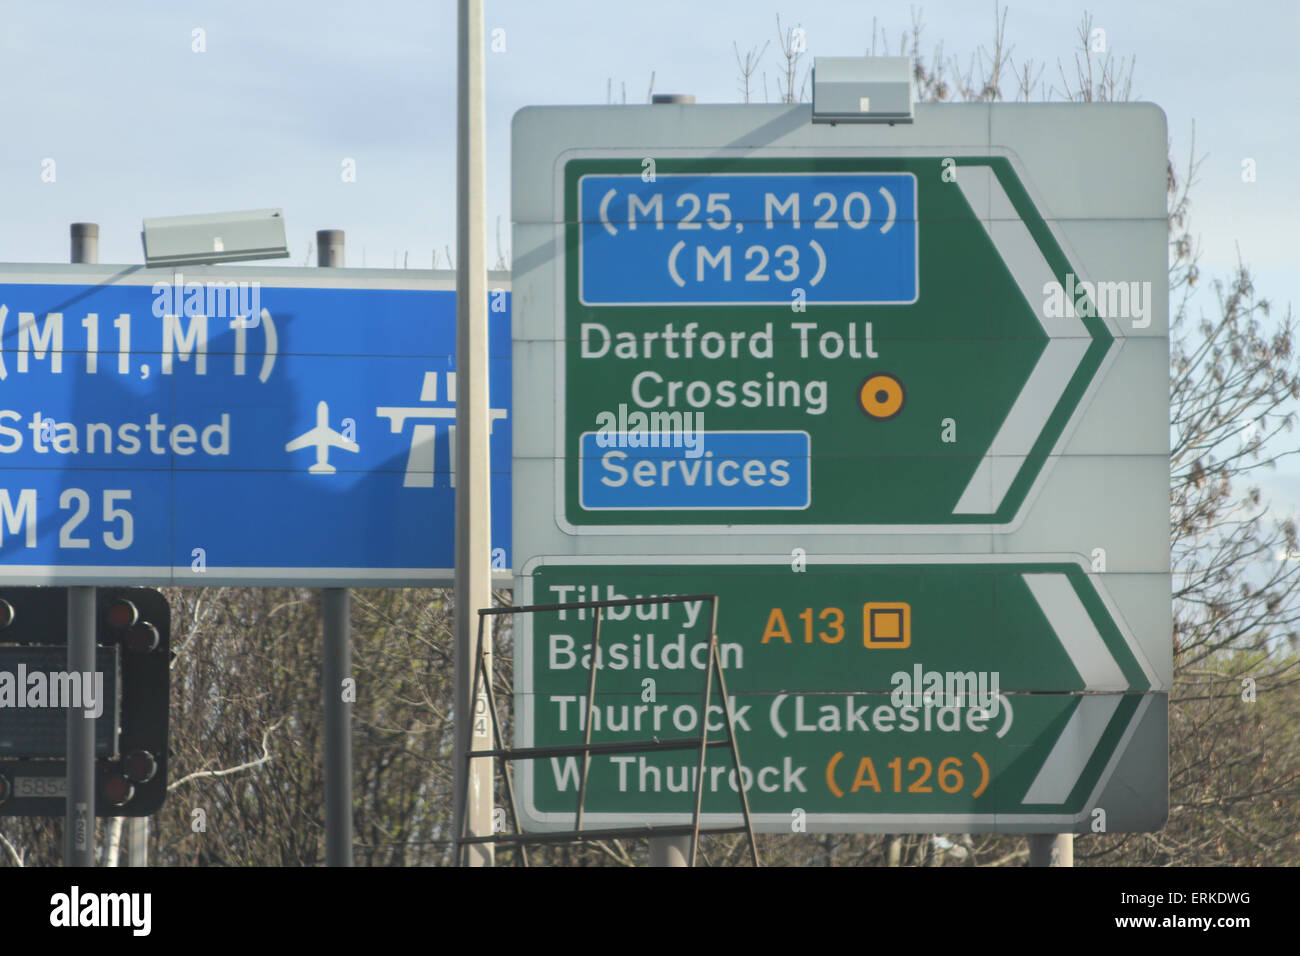 M25 M20 M23 M11 M1 motorway sign Stock Photo, Royalty Free Image ...